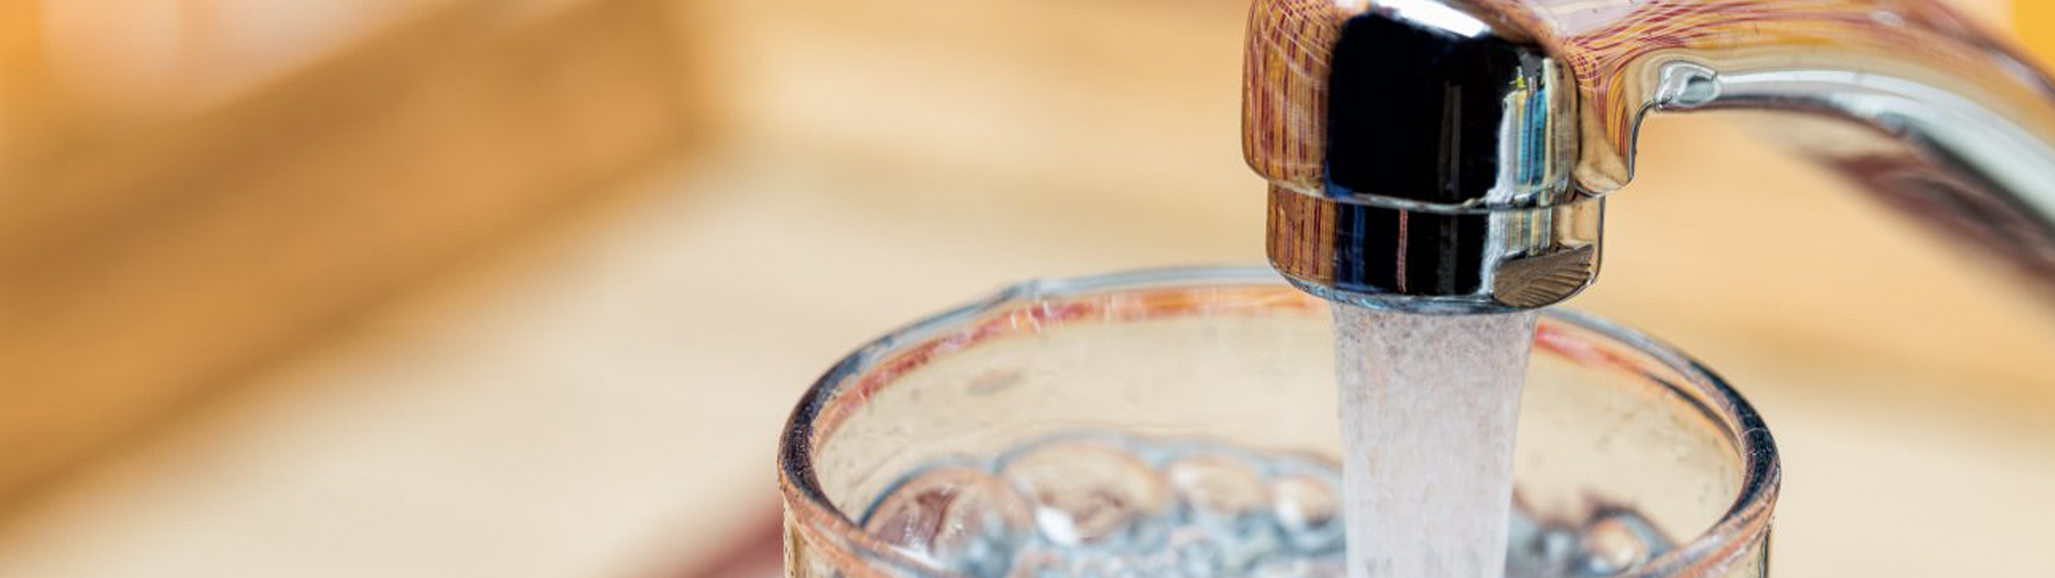 Llenar un vaso con agua potable del grifo de la cocina